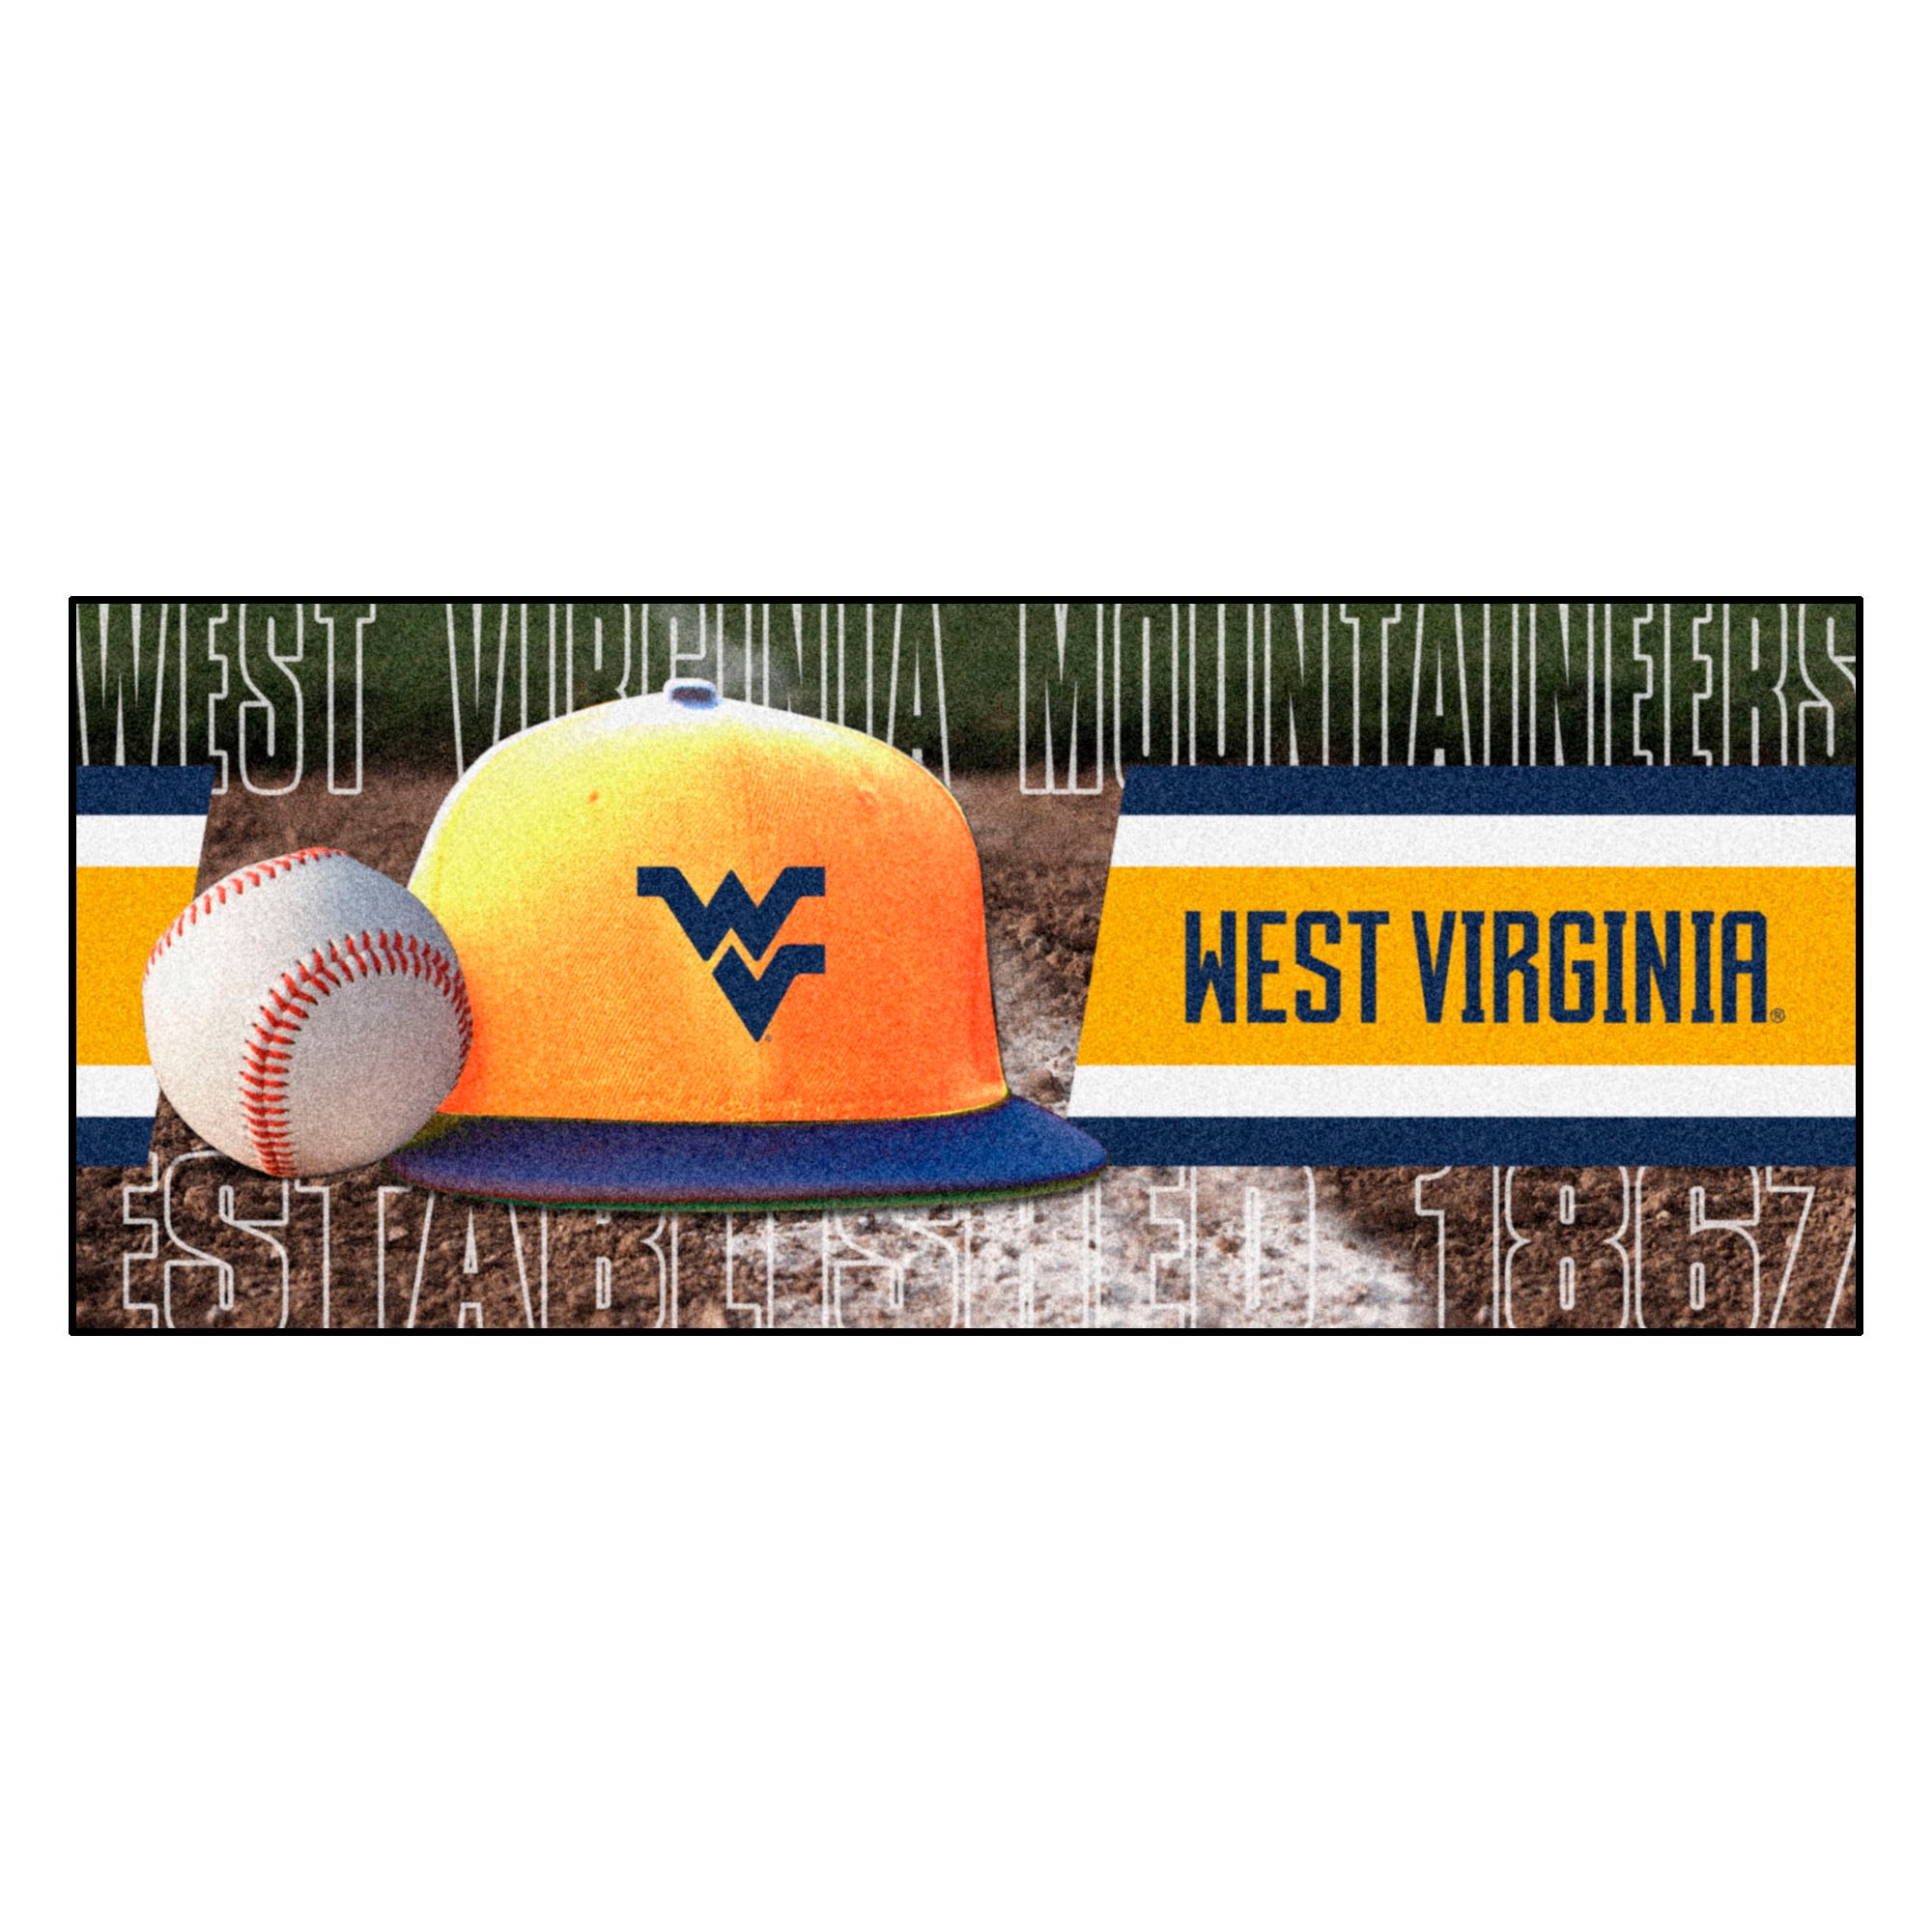 West Virginia University Baseball Runner